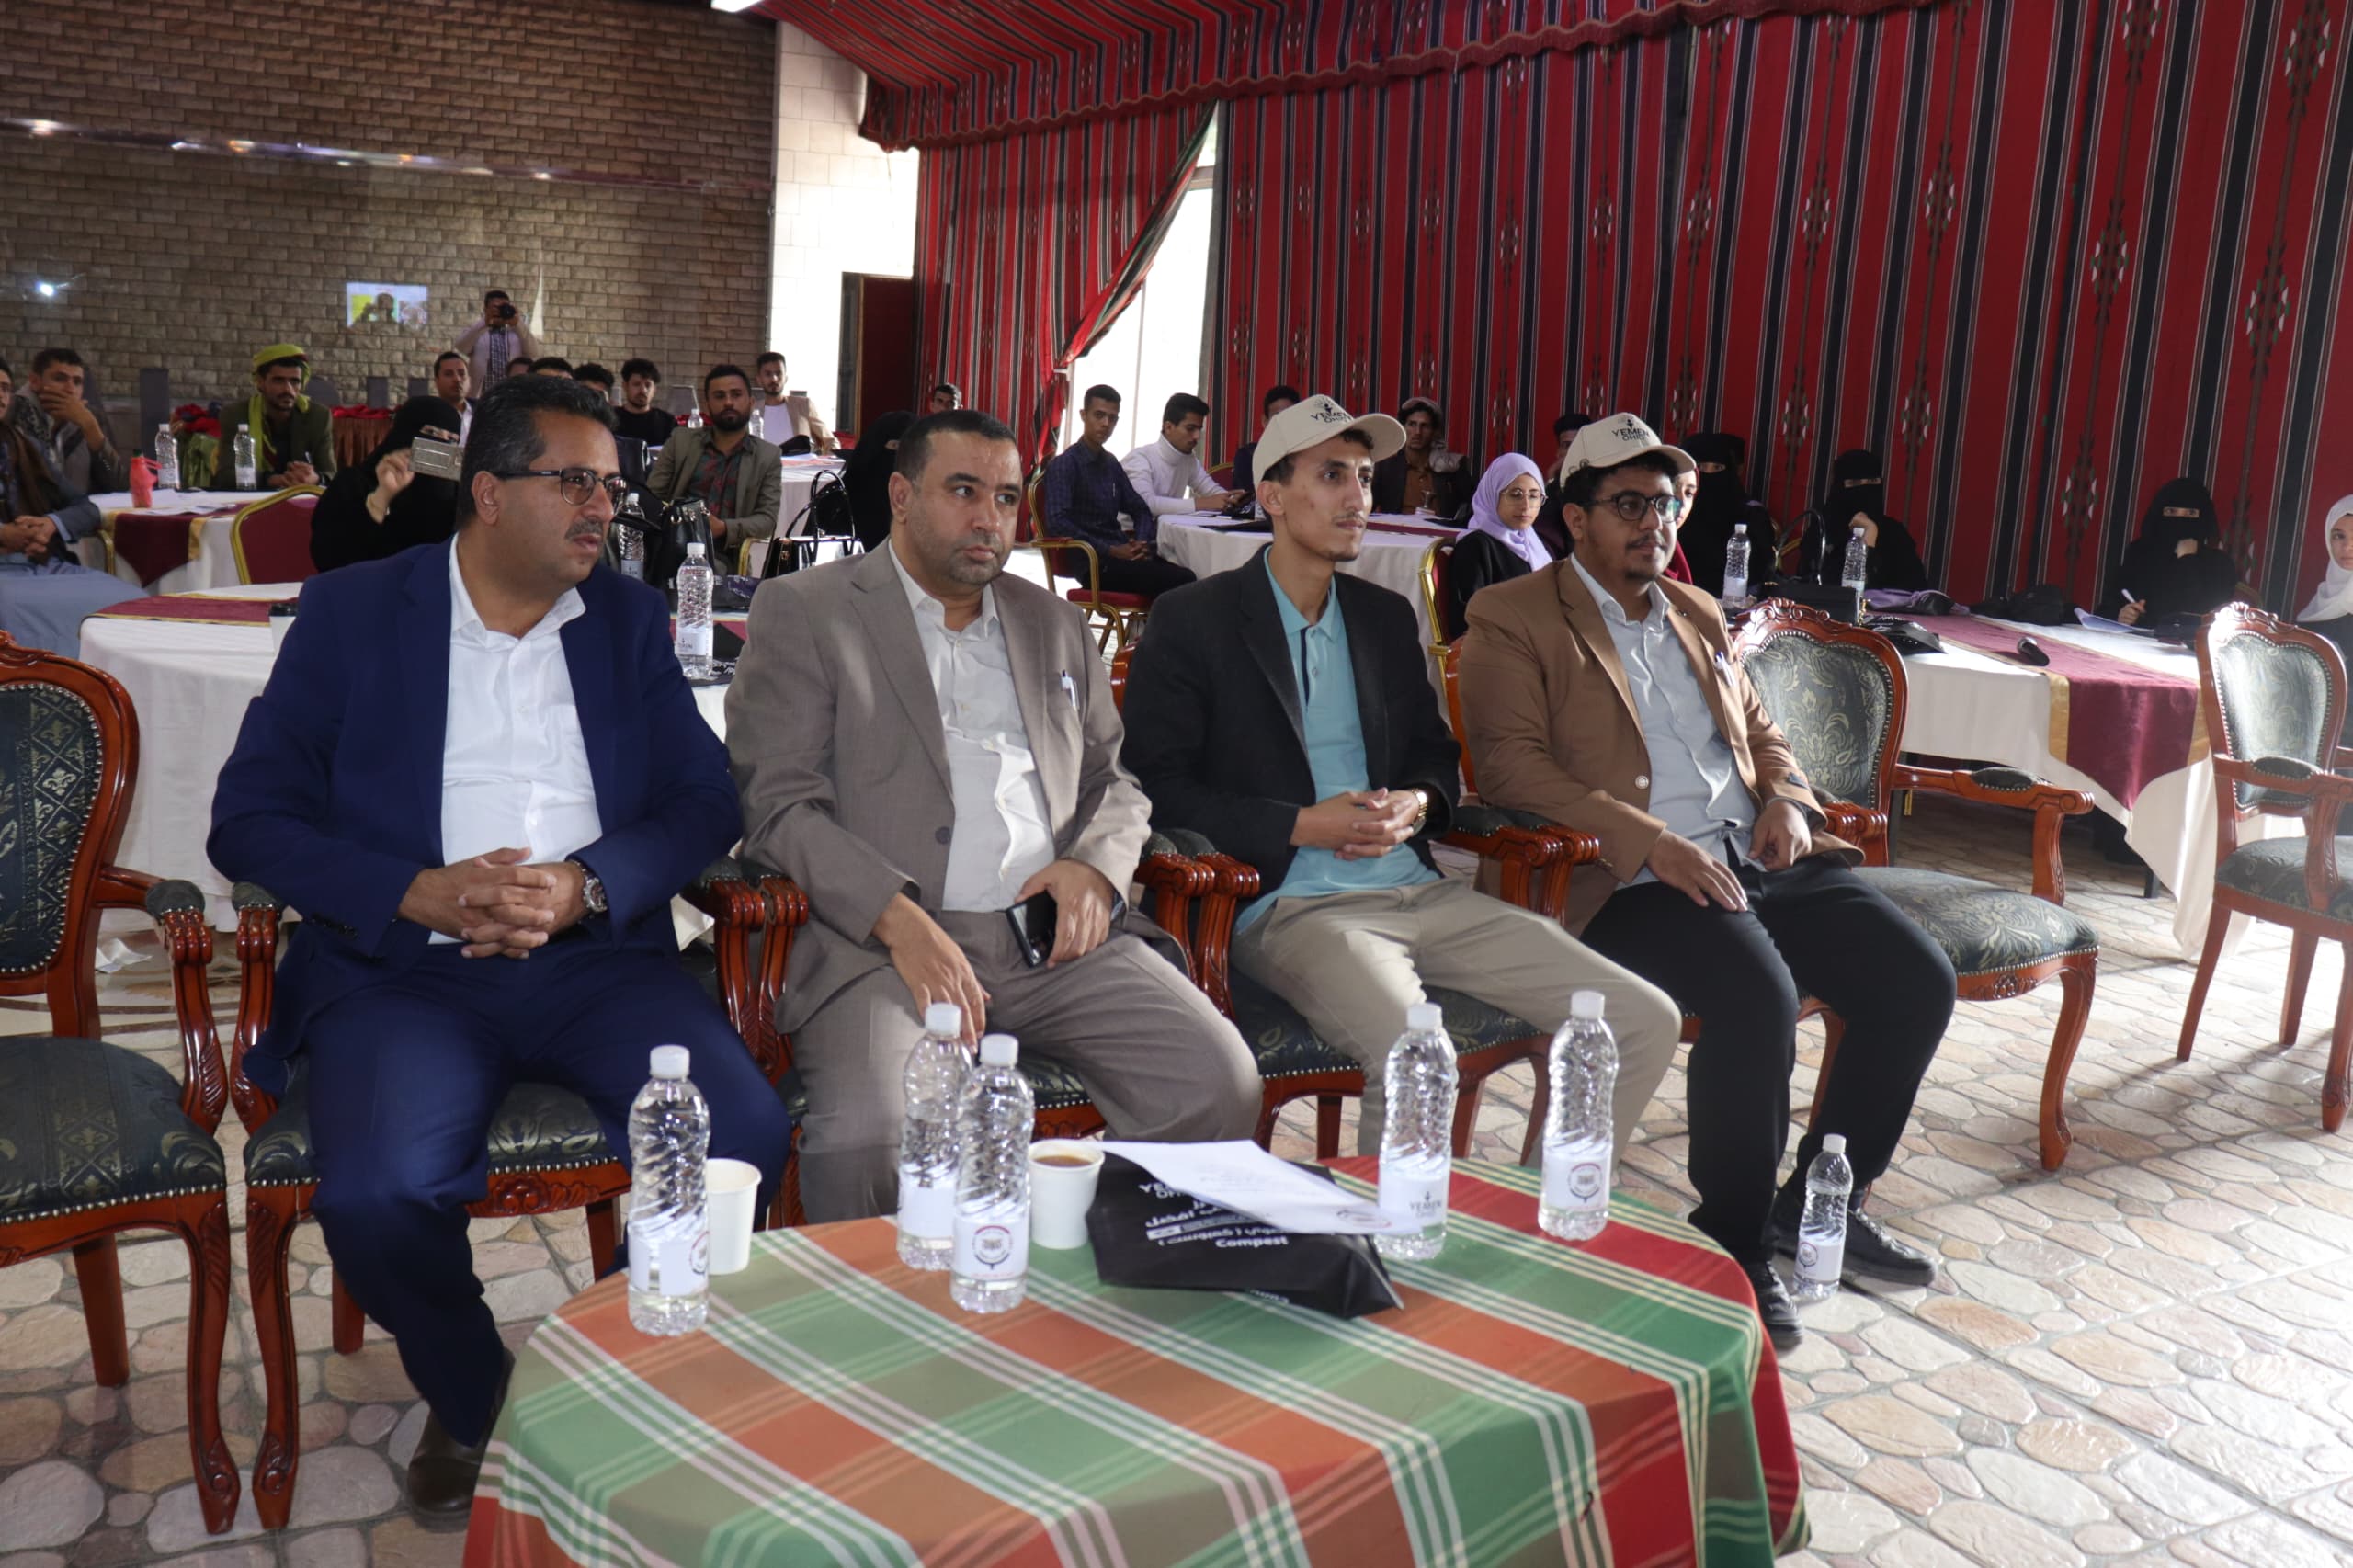 بتمويل من مصلحة الجمارك اليمنية منظمة يمن اوهايد تنفذ ورشة تعريفية حول أهمية إنتاج السماد العضوي (الكمبوست) و مخاطر المبيدات الكيميائية